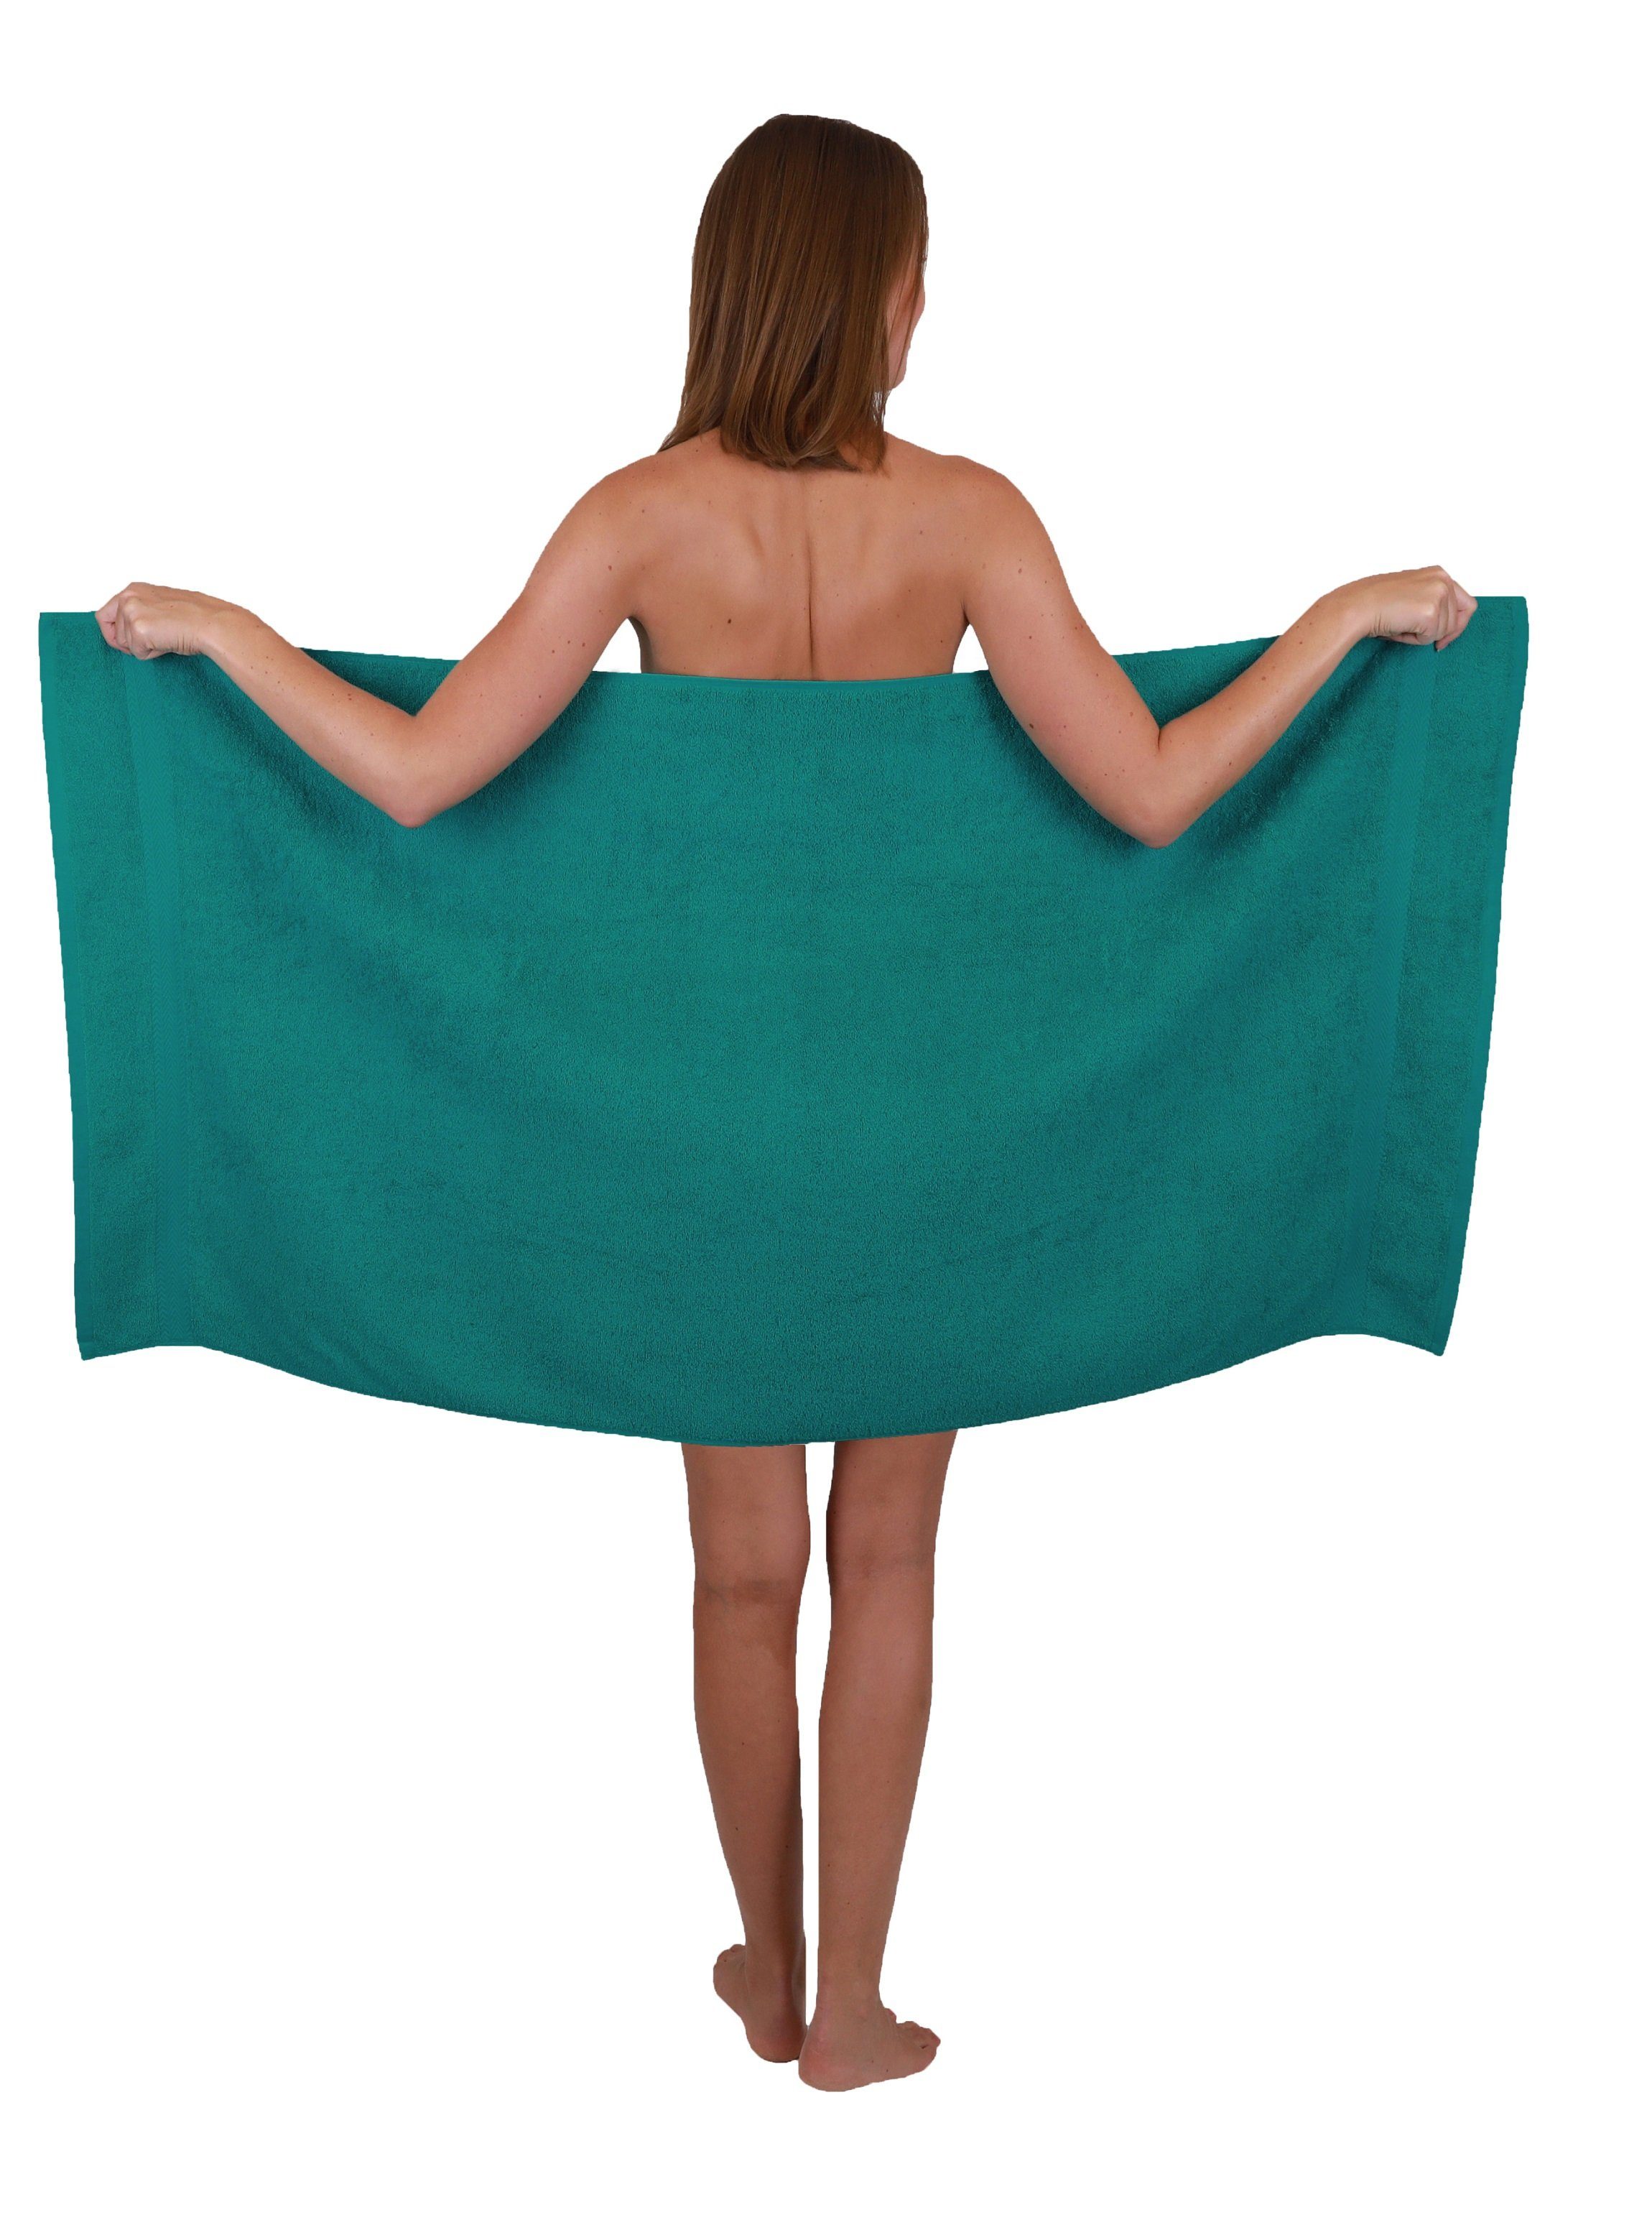 Betz Handtuch Set Premium 10-tlg. Farbe Baumwolle Smaragdgrün Apfelgrün, & Handtuch-Set 100